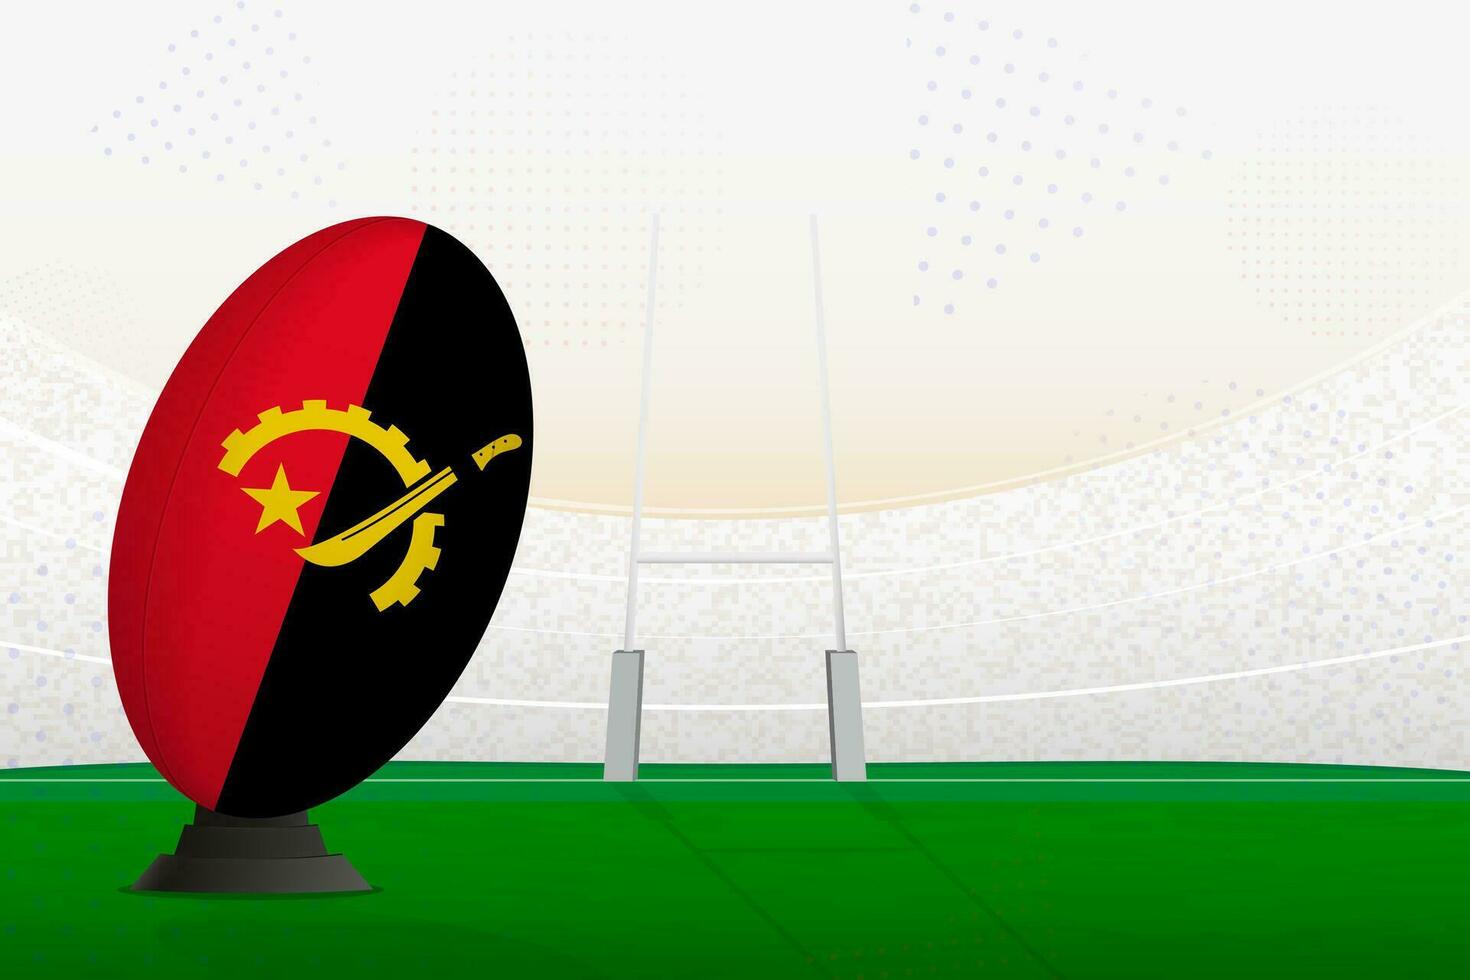 angola nationell team rugby boll på rugby stadion och mål inlägg, framställning för en straff eller fri sparka. vektor